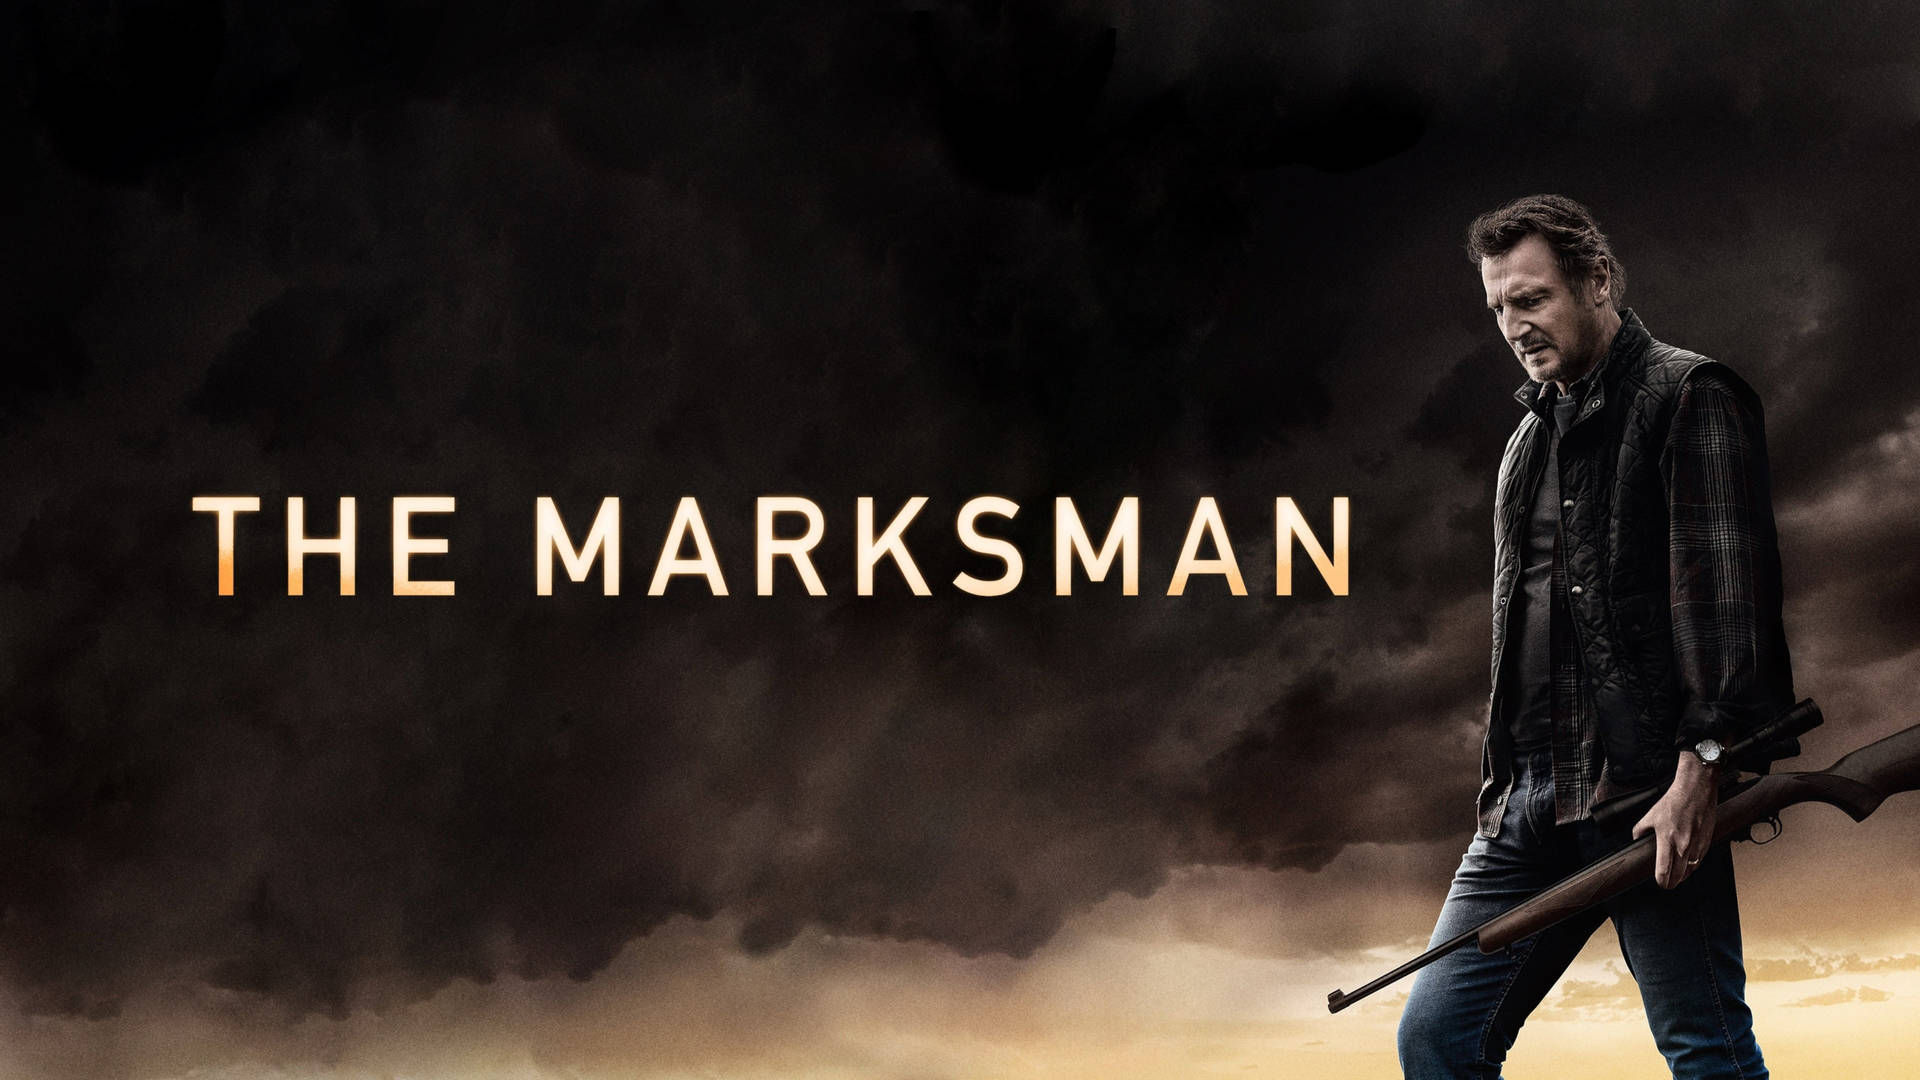 Liamneeson, Jim Hanson Och The Marksman-filmen. Wallpaper